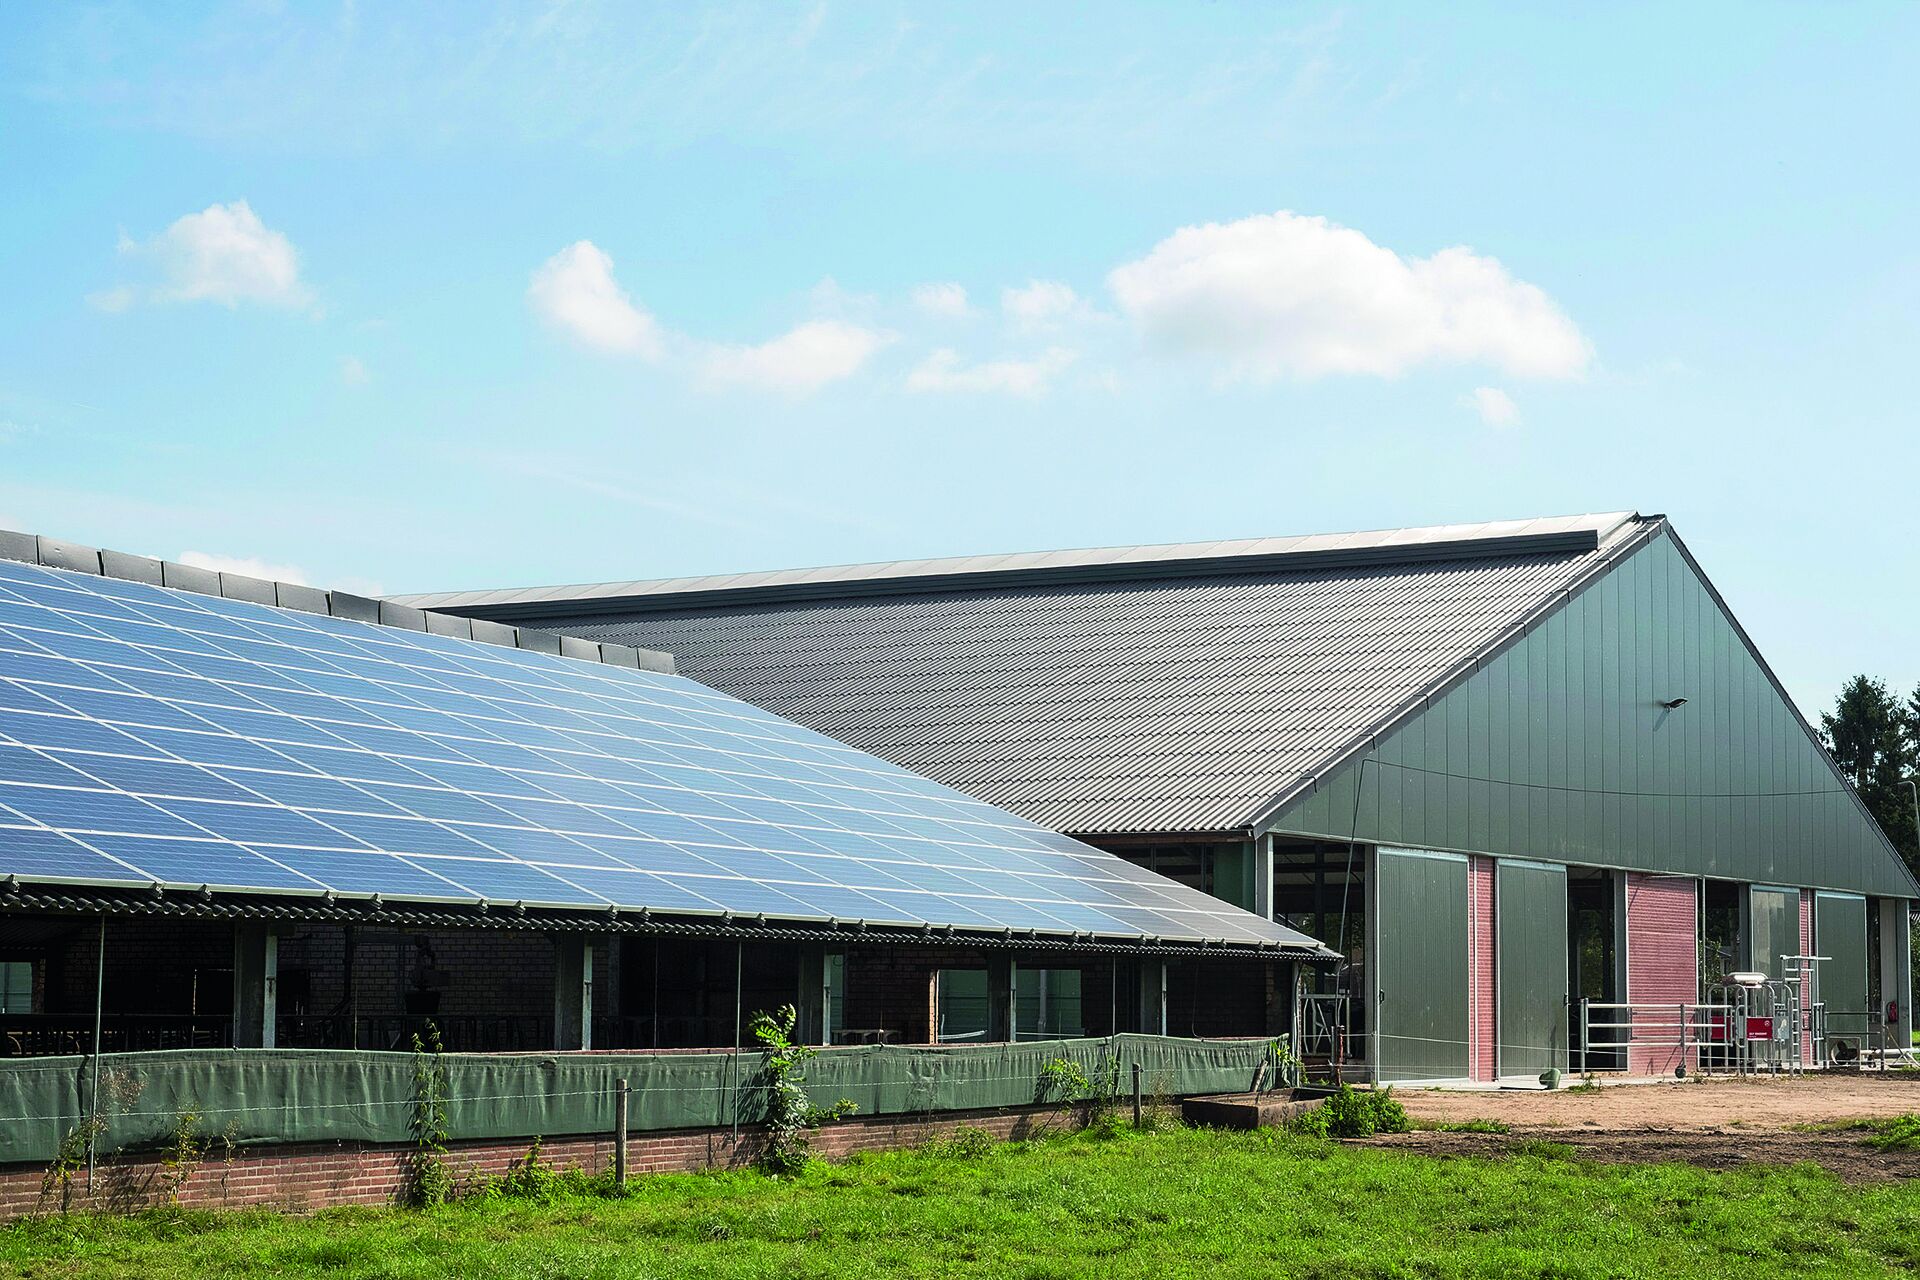 Ein moderner Kuhstall von außen. Auf dem Dach ist eine Photovoltaikanlage